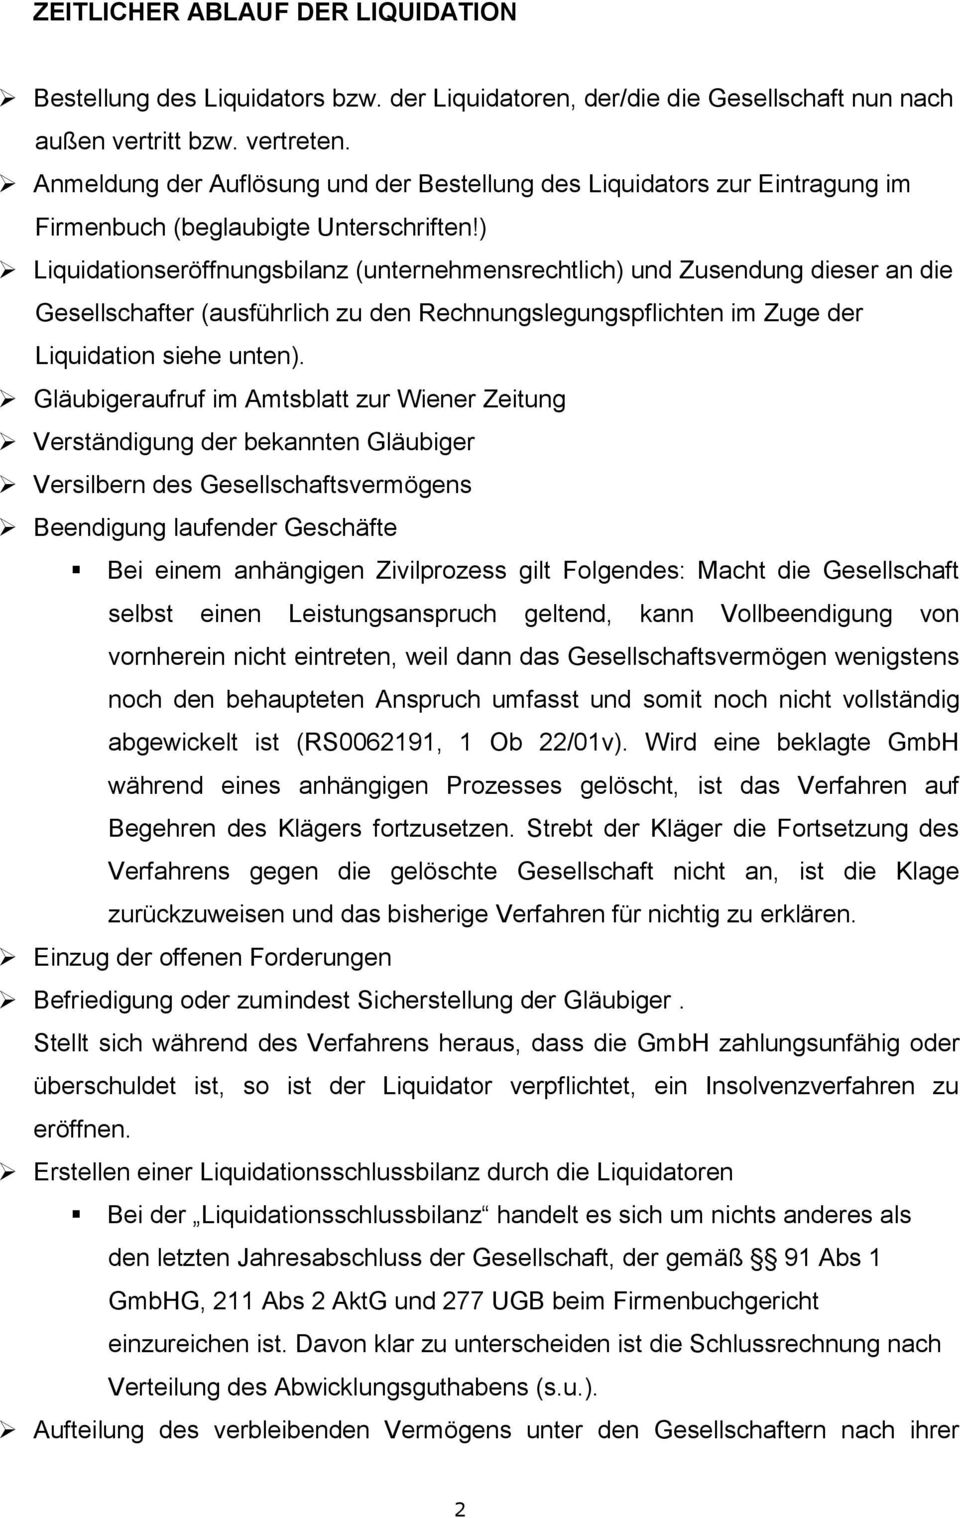 Checkliste Liquidation Einer Gmbh Pdf Free Download